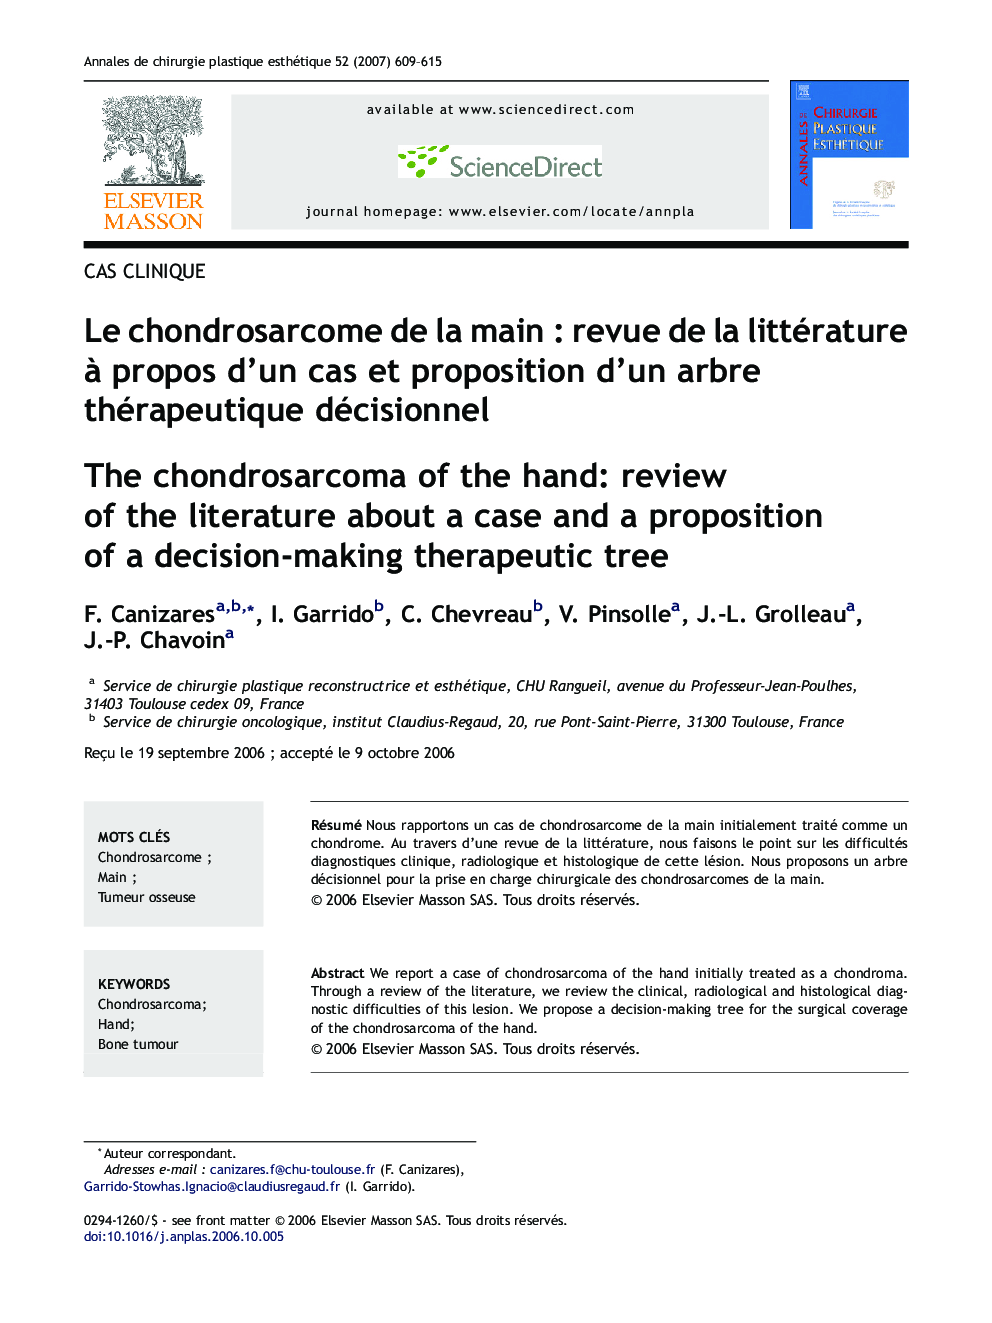 Le chondrosarcome de la main : revue de la littérature à propos d'un cas et proposition d'un arbre thérapeutique décisionnel